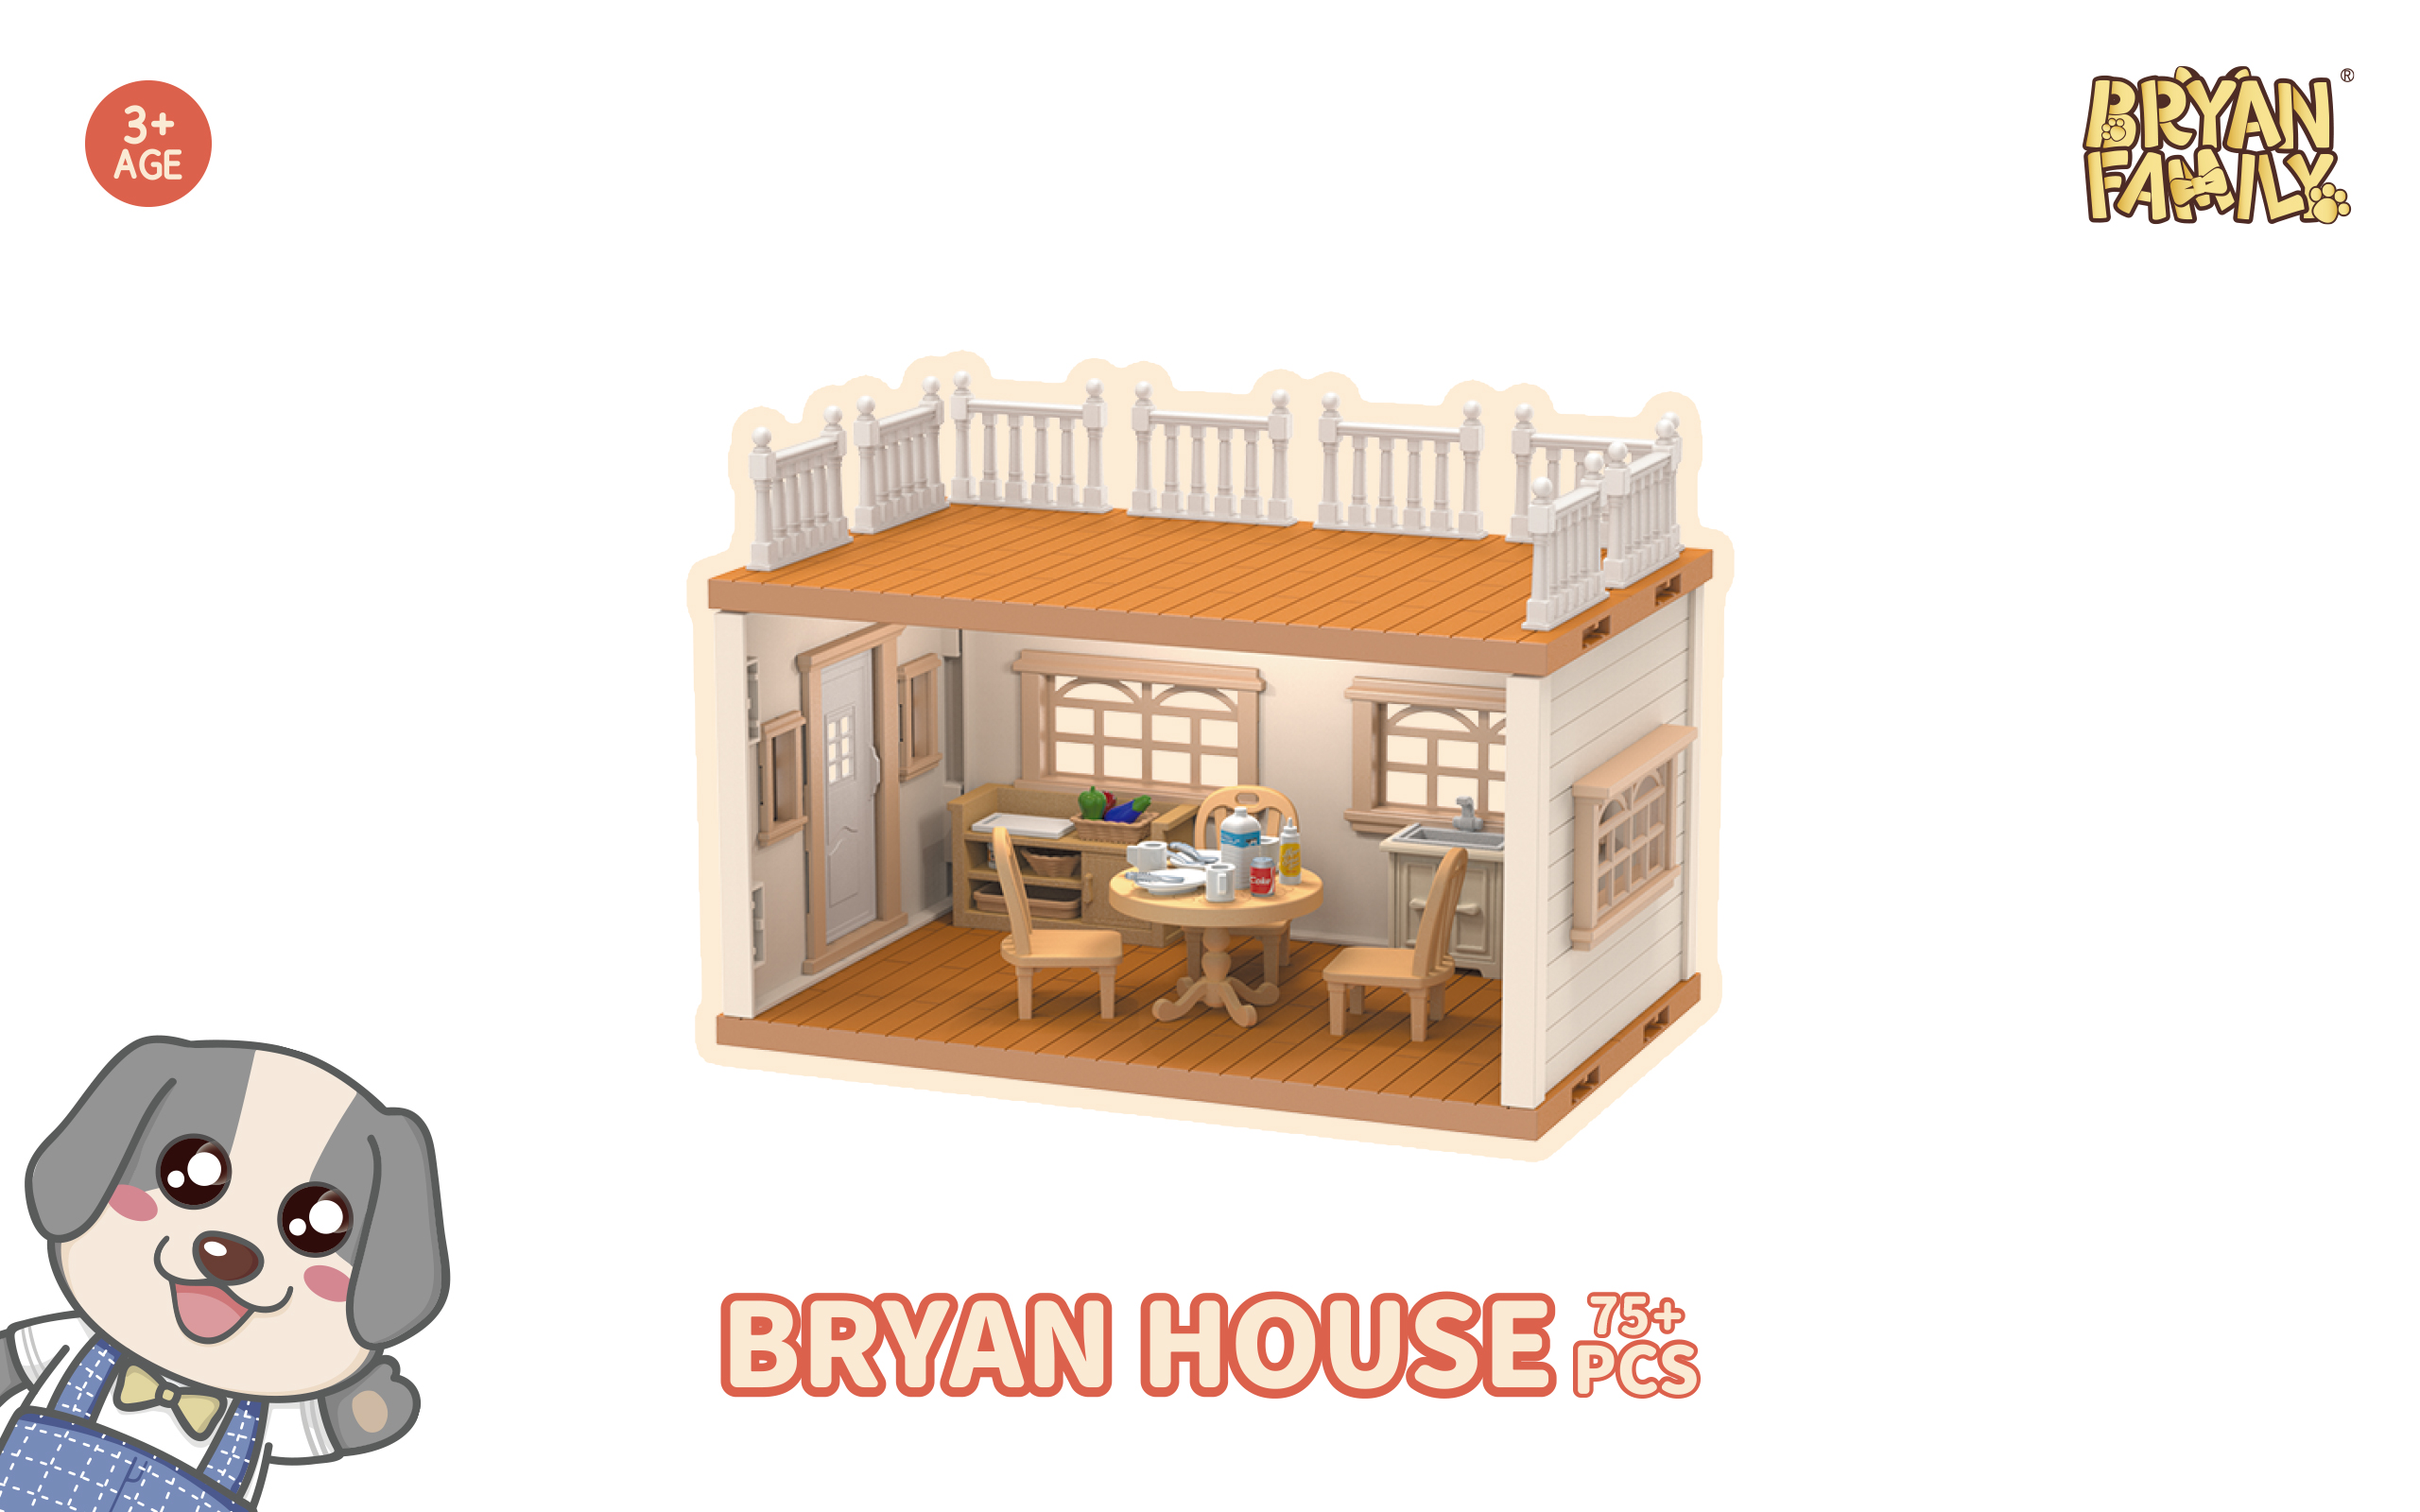 Bryan House 75+PCS